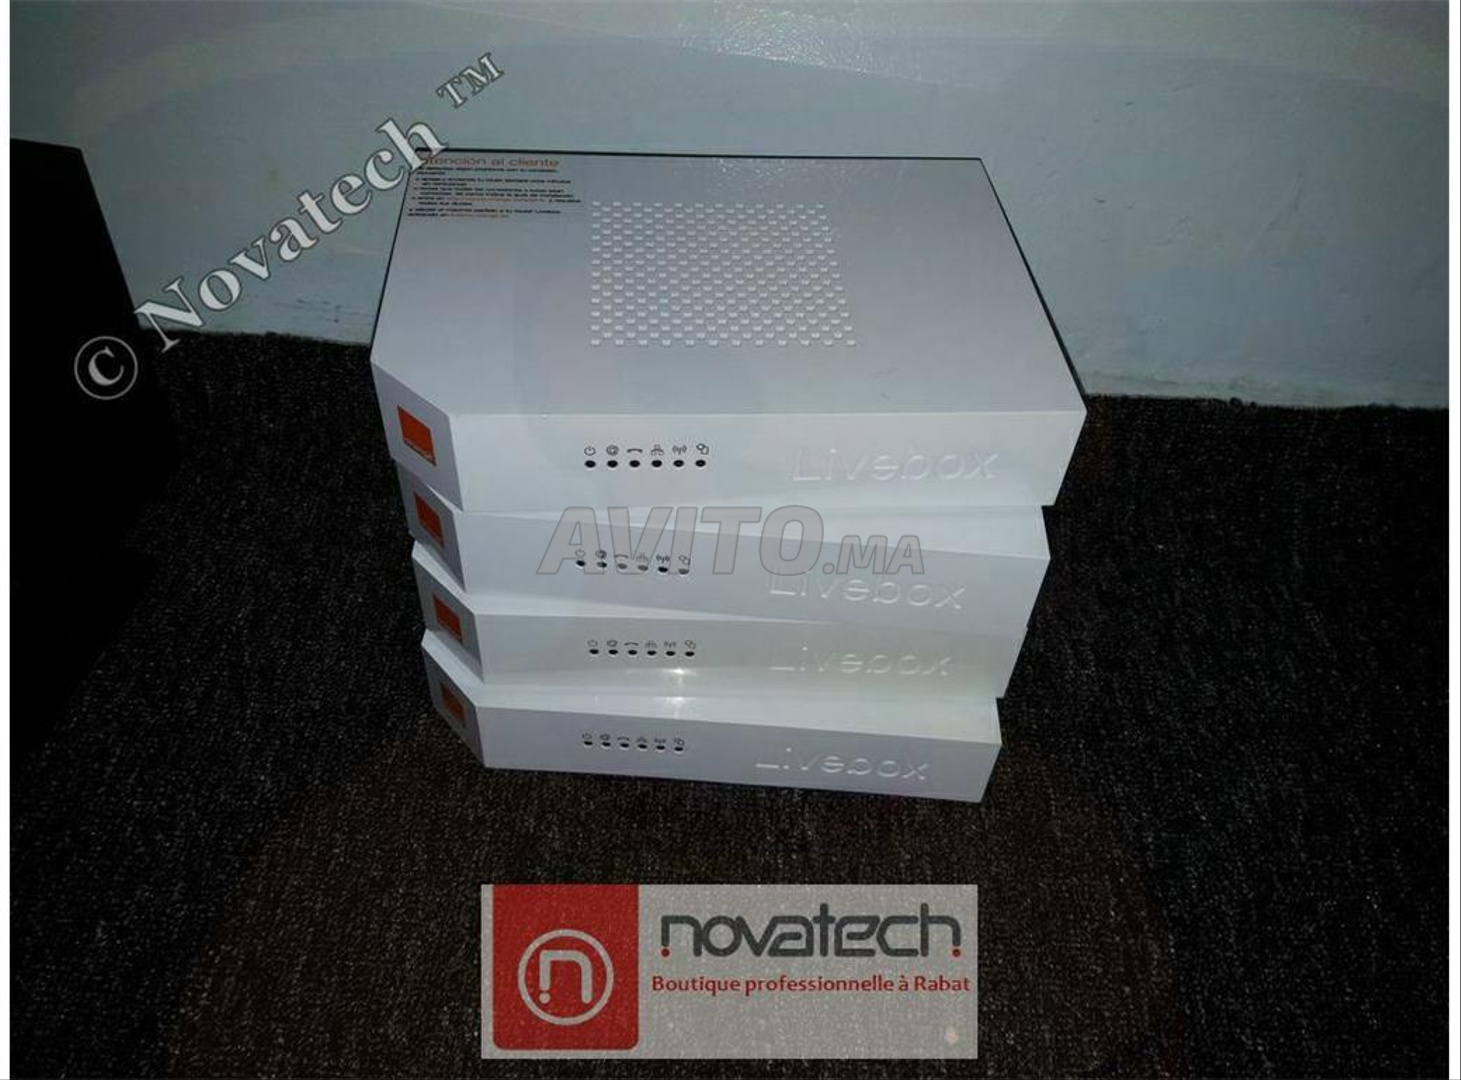 Routeur configuré*3G/ADSL**Livebox2.1 WiFi-N300 - 3